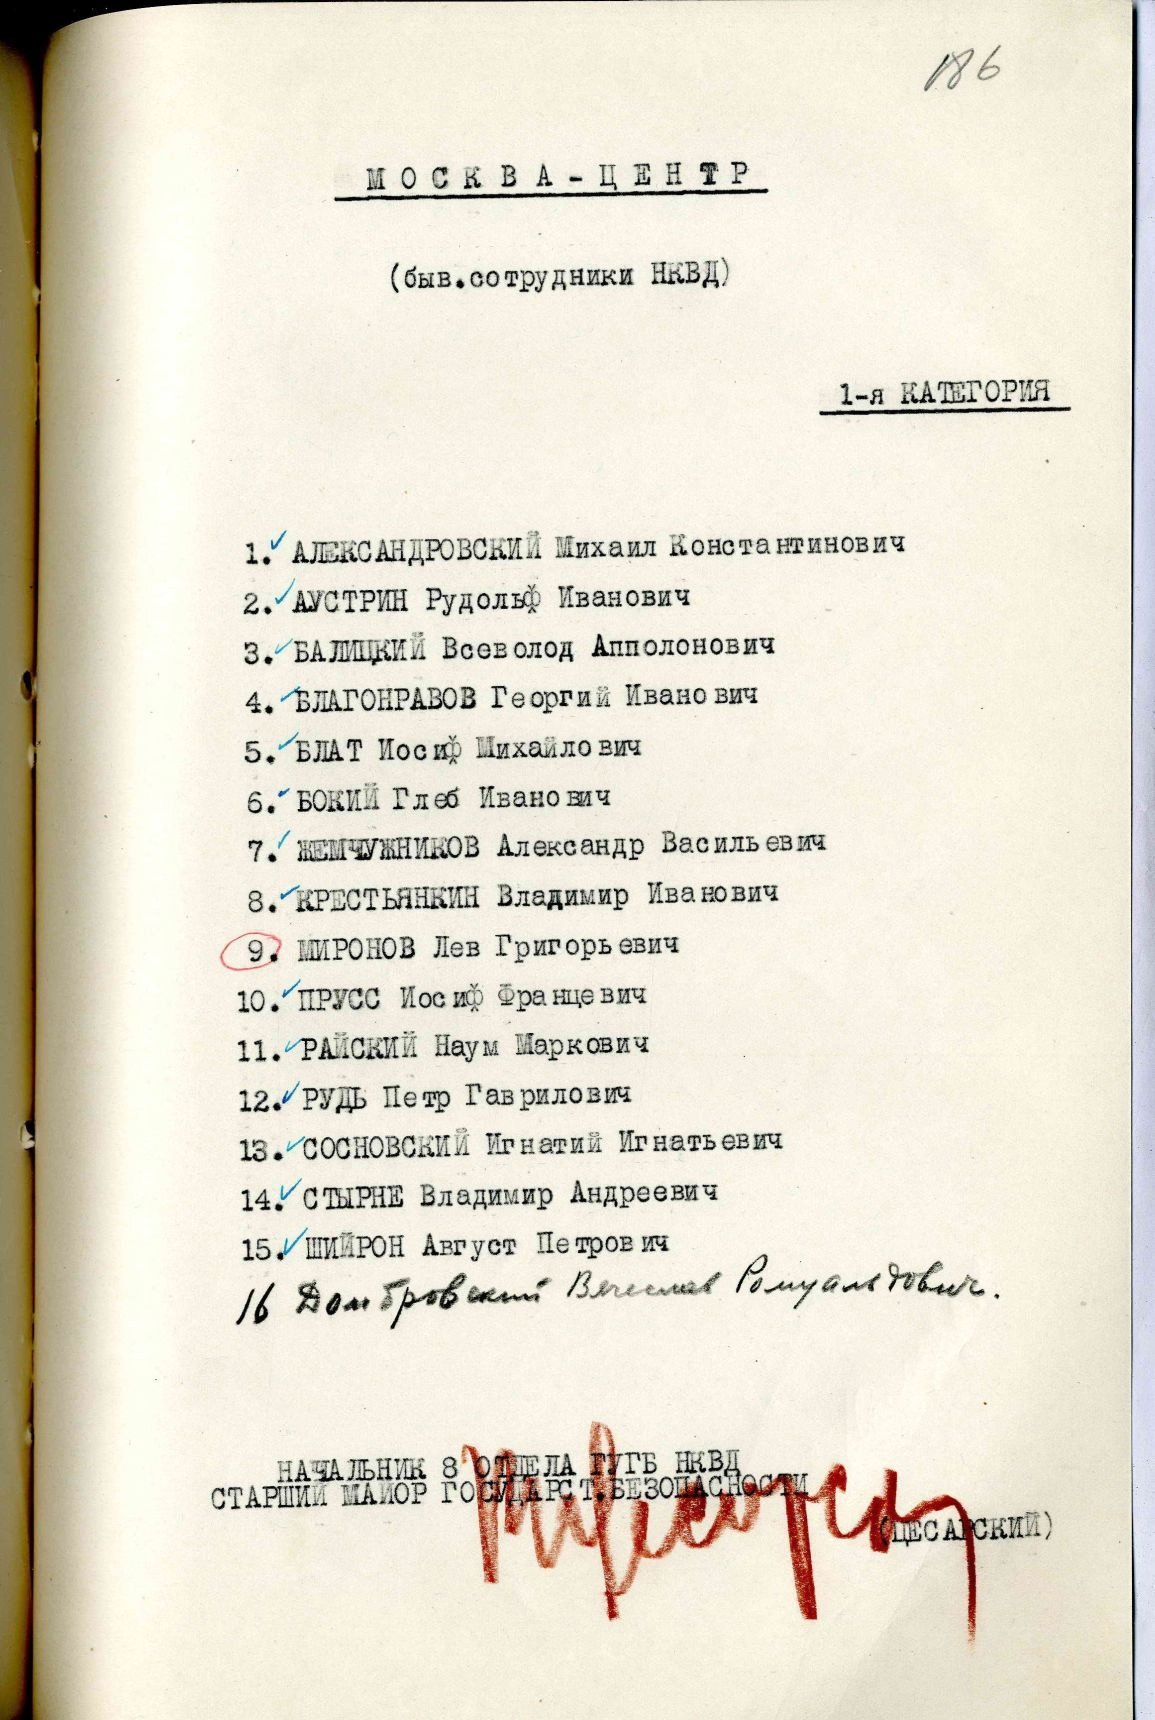 Сталинский расстрельный список в ОП от 13.11.1937 г.(подпись В. Е. Цесарского)